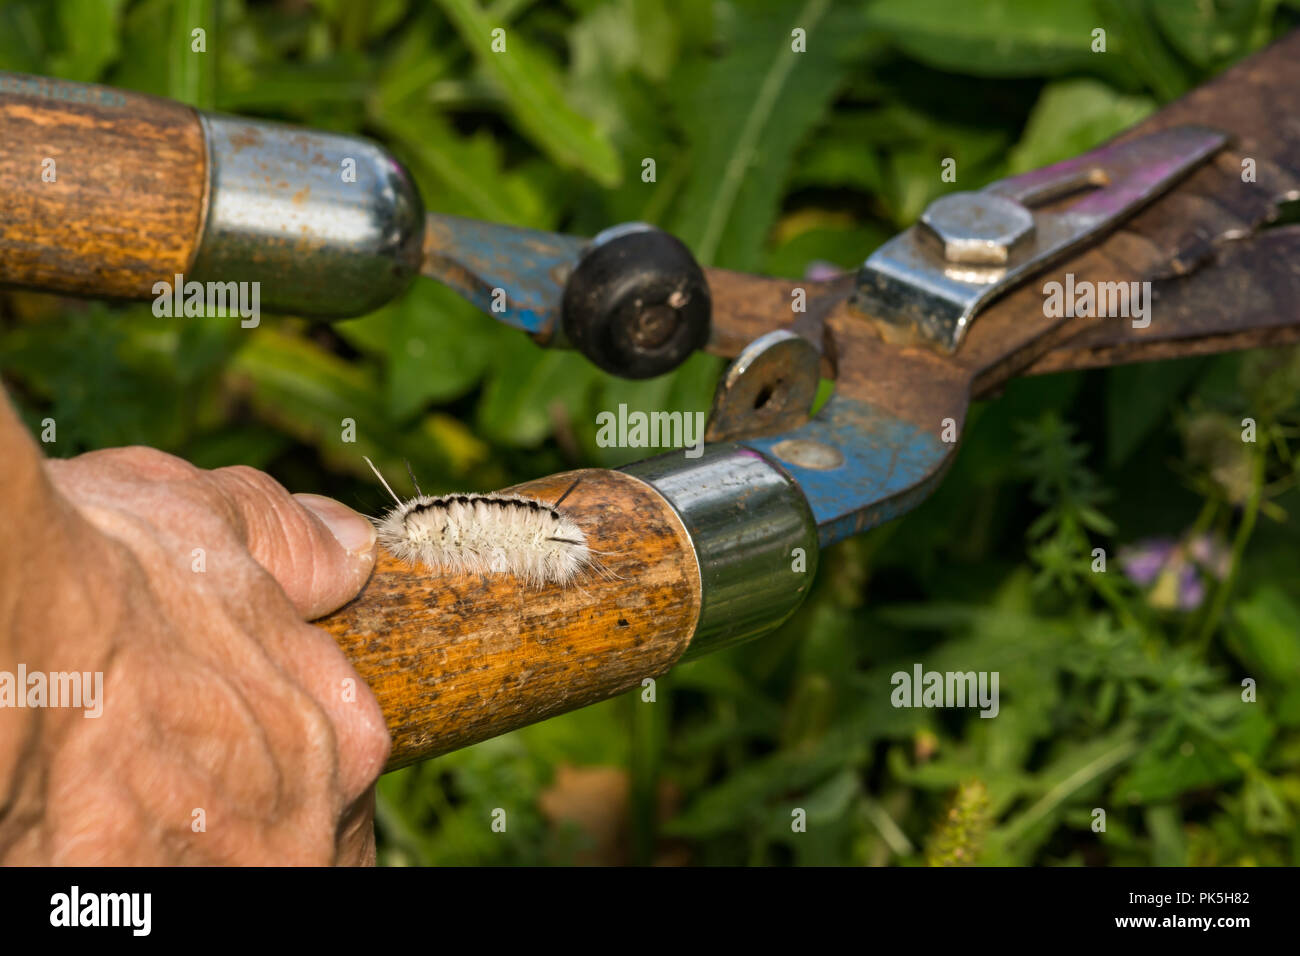 Versteckte Gefahren der Gartenarbeit. Eine Frau von einem Hickory Tussock Caterpillar gestochen werden beim Schneiden von Unkraut im Garten. Stockfoto